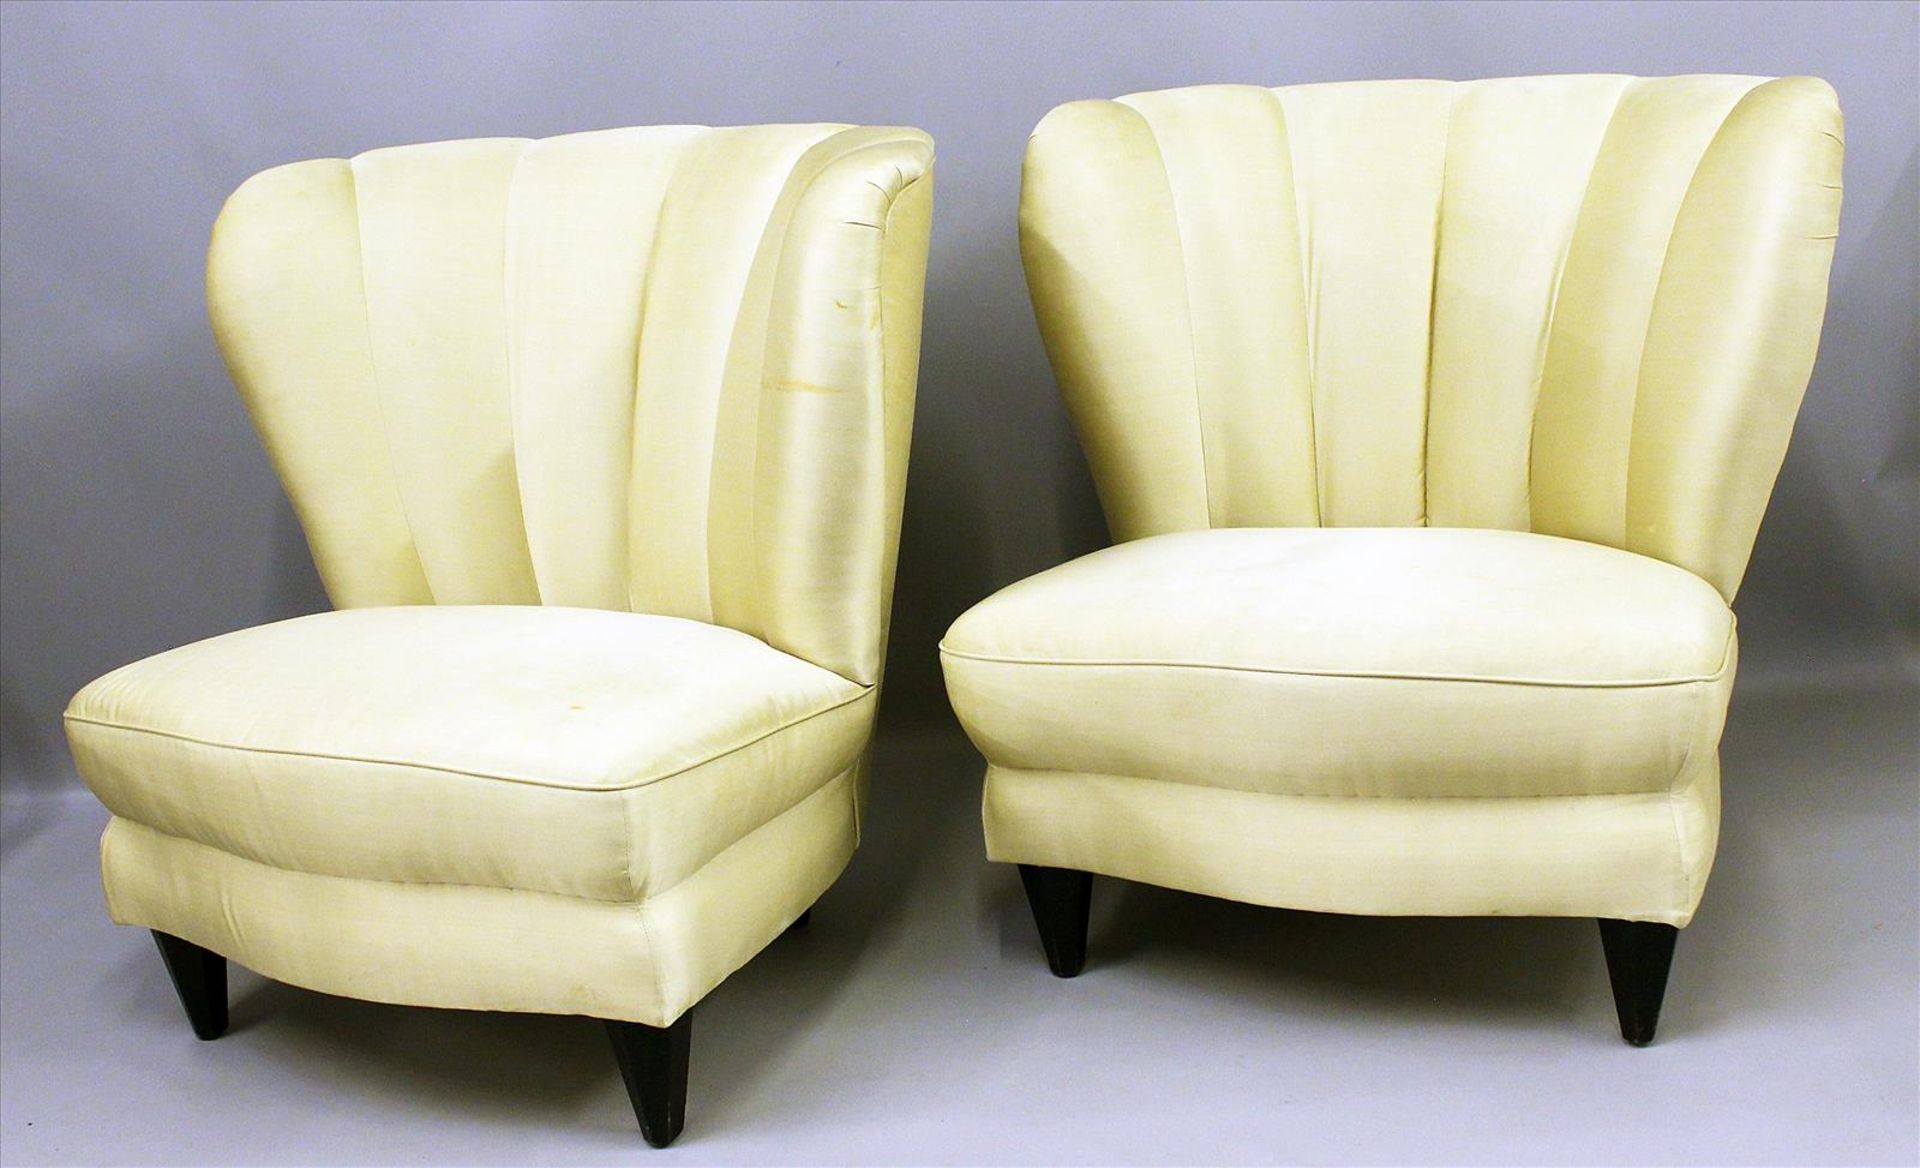 Vintage-Sofa und Sessel im italienischen Stil. - Bild 2 aus 2